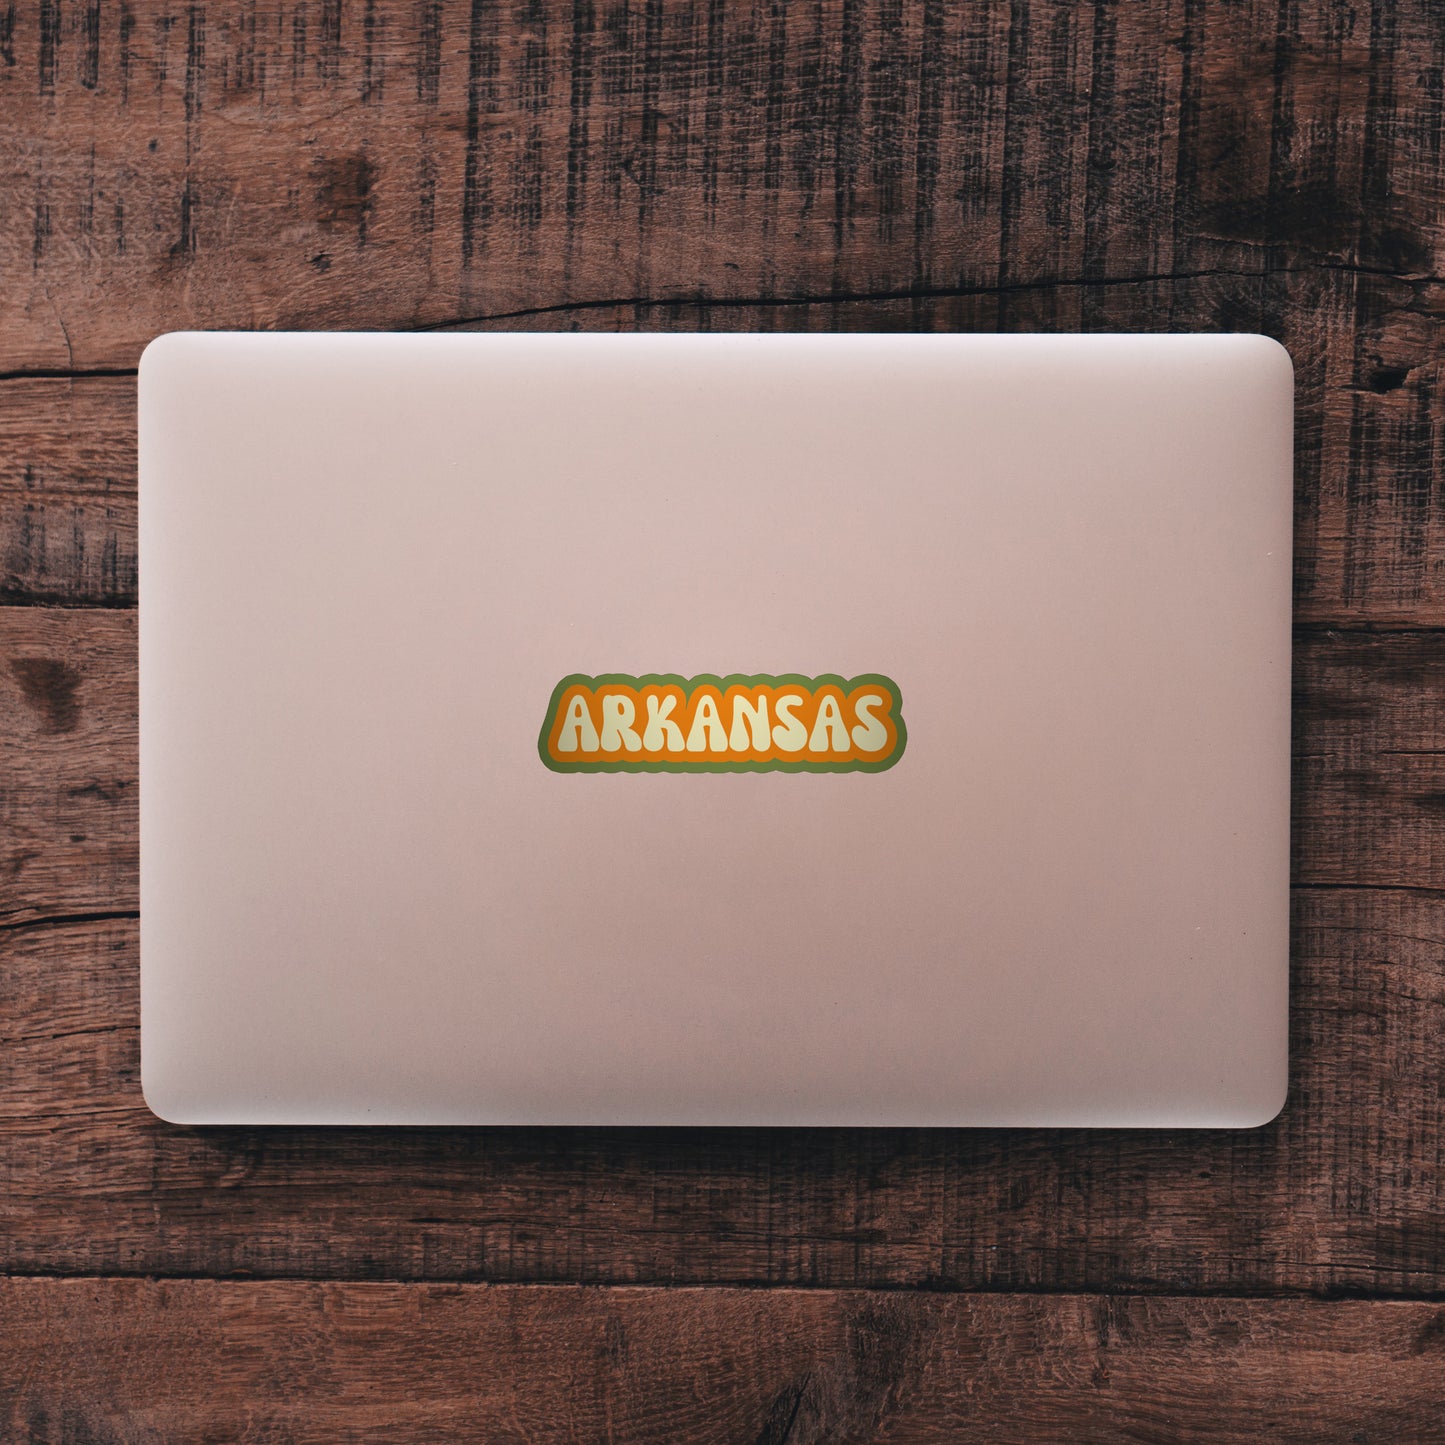 Arkansas Cloud Sticker